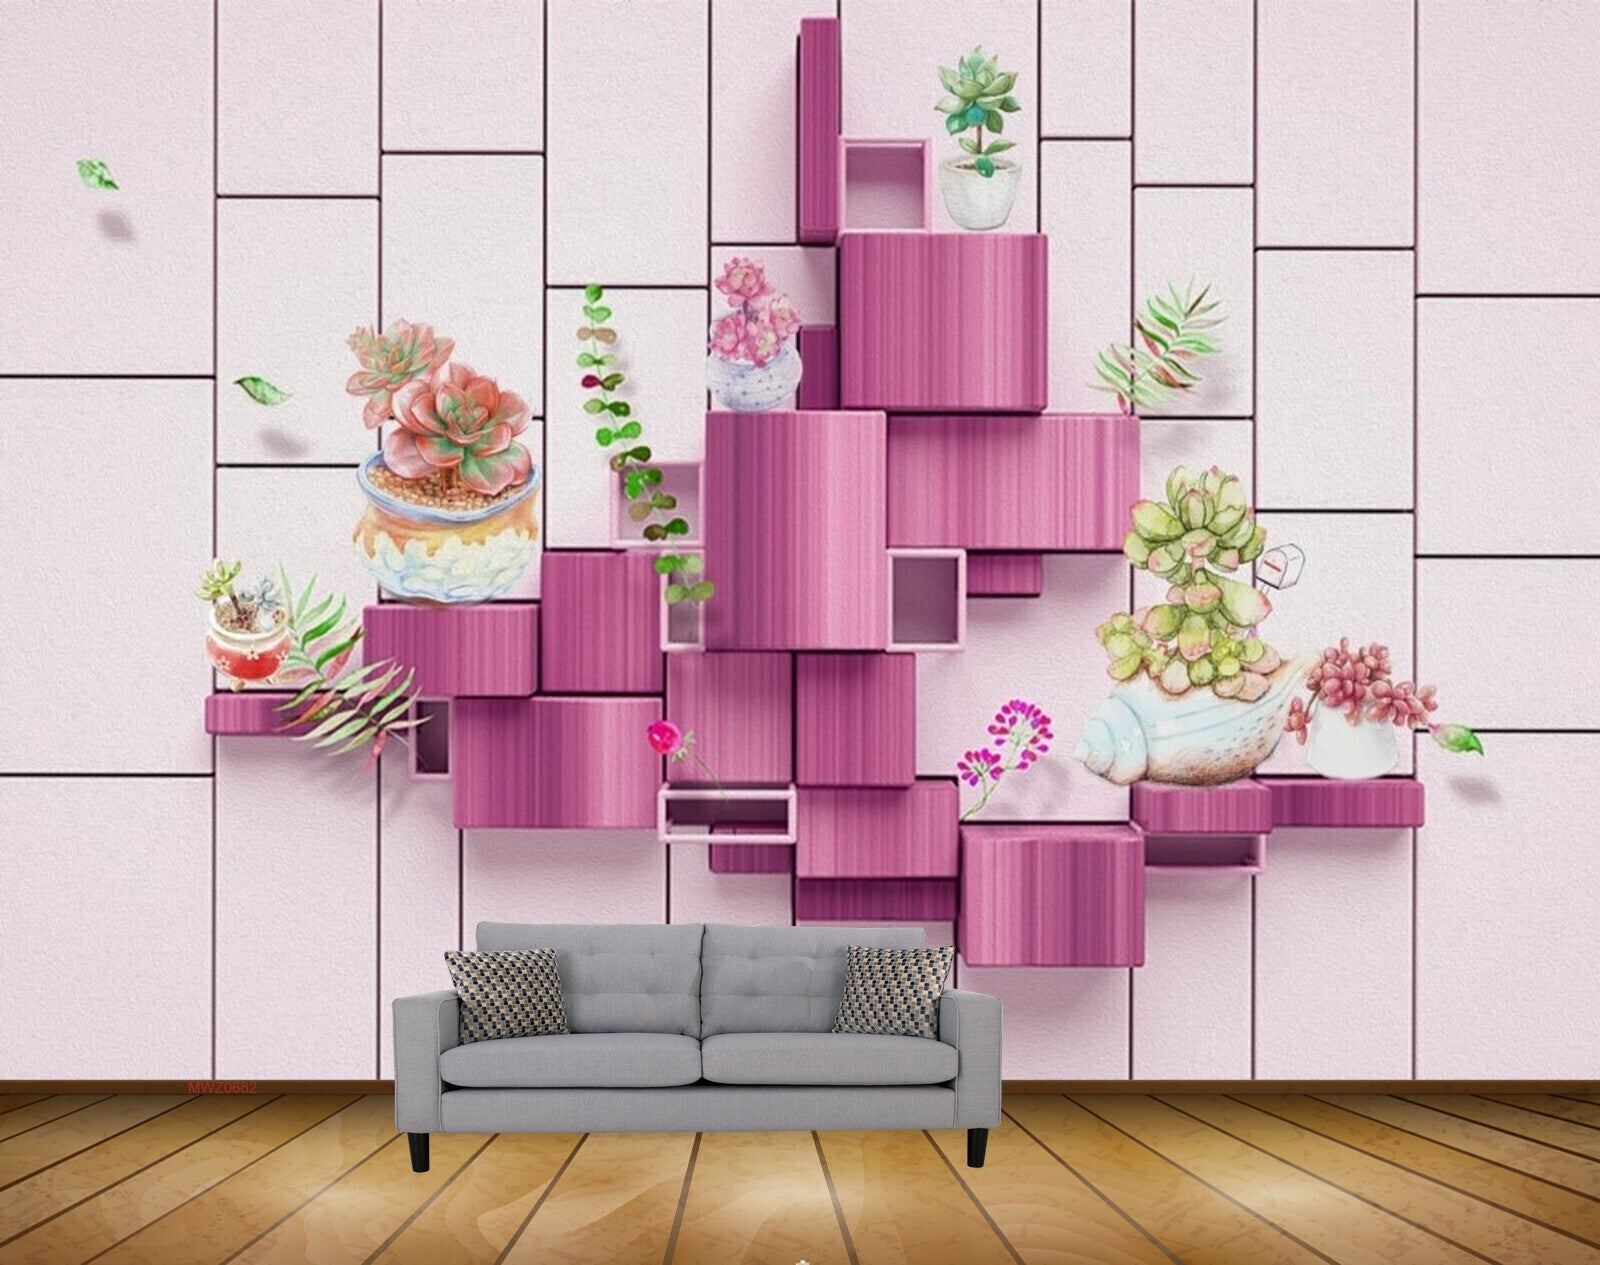 50 Pink and Green iPhone Wallpaper  WallpaperSafari